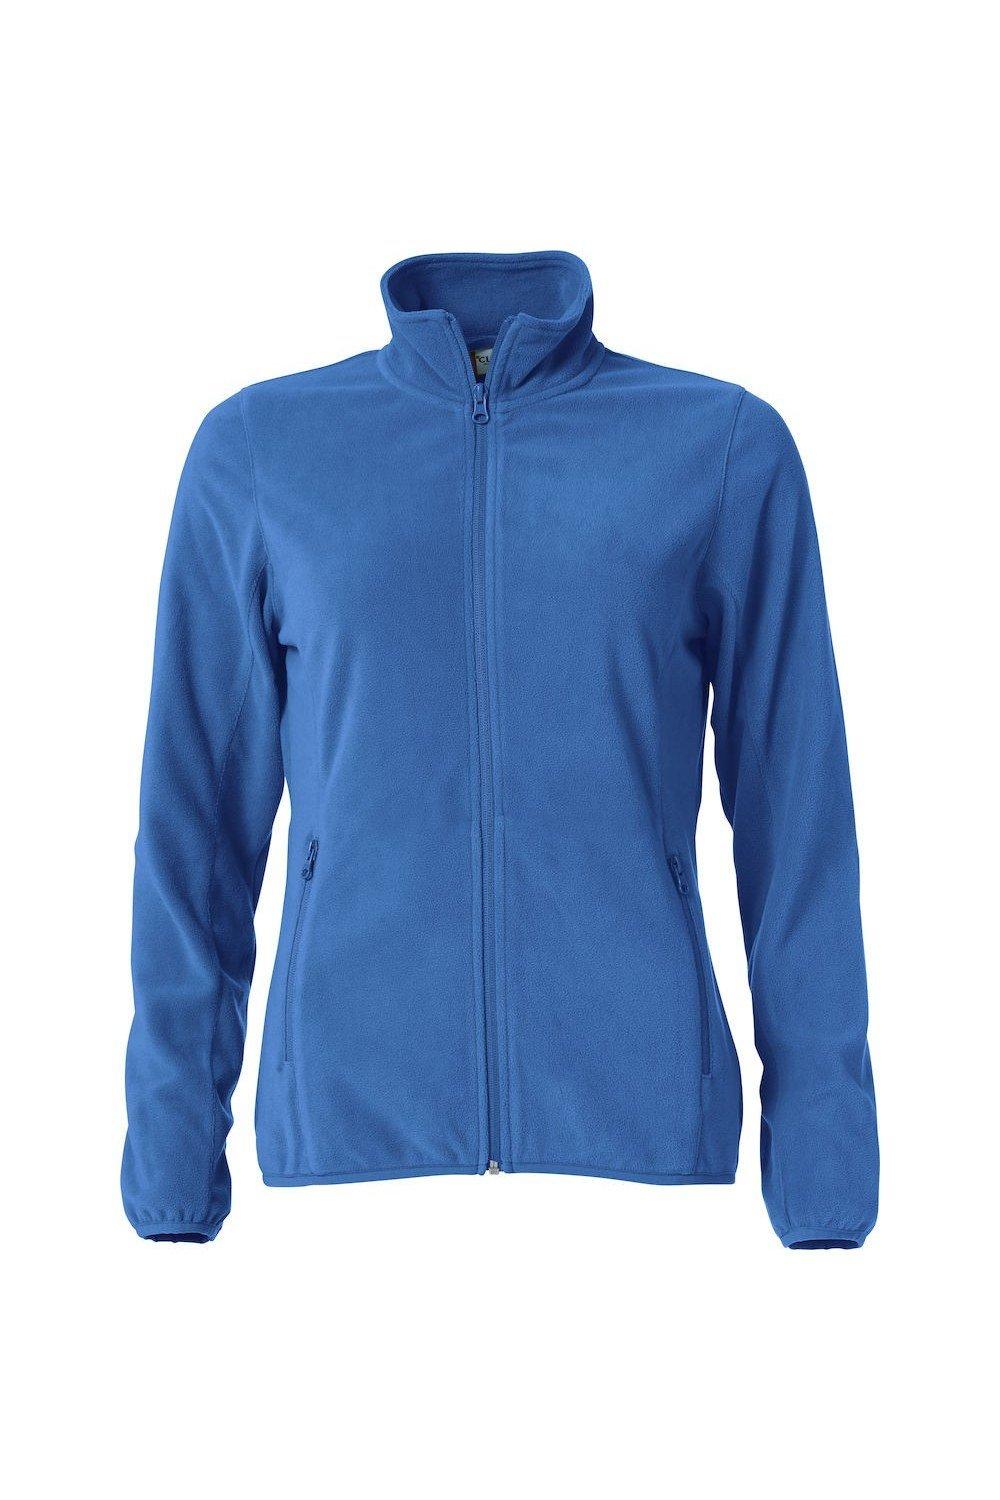 Базовая куртка из микрофлиса Clique, синий базовая спортивная сумка clique синий